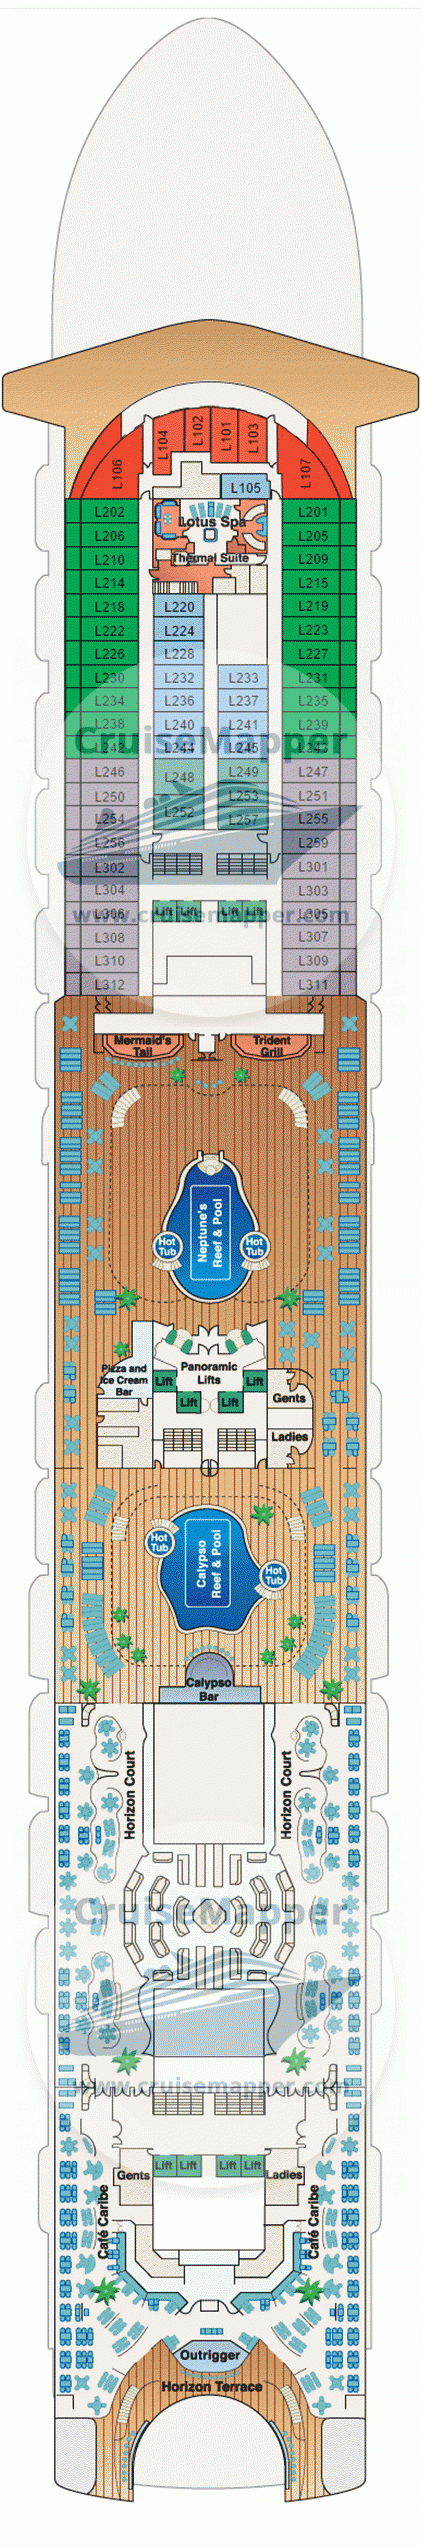 Emerald Princess Deck 15 - Lido-Pools-Cabins